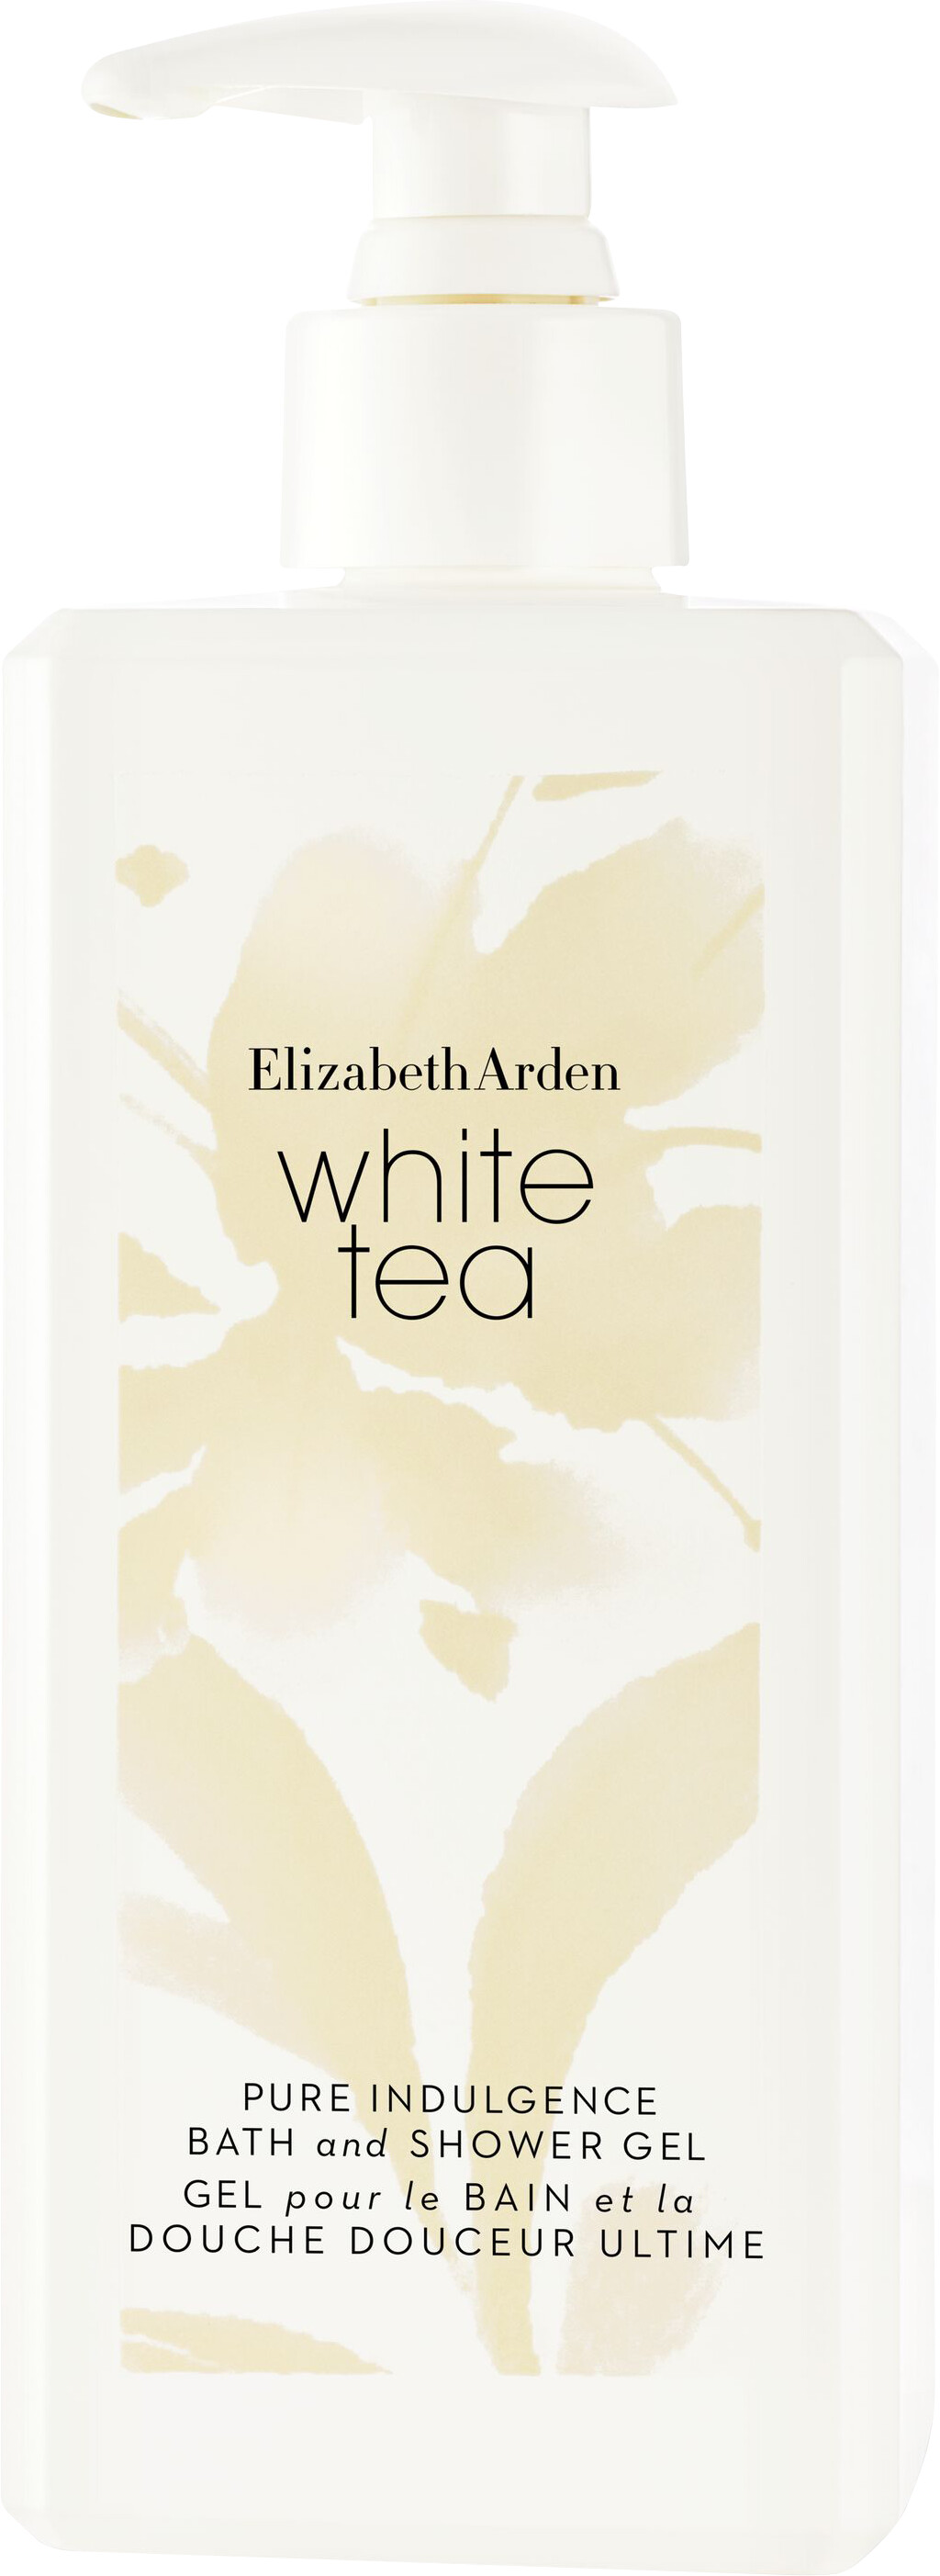 Elizabeth Arden White Tea Pure Indulgence Bath and Shower Gel 390ml